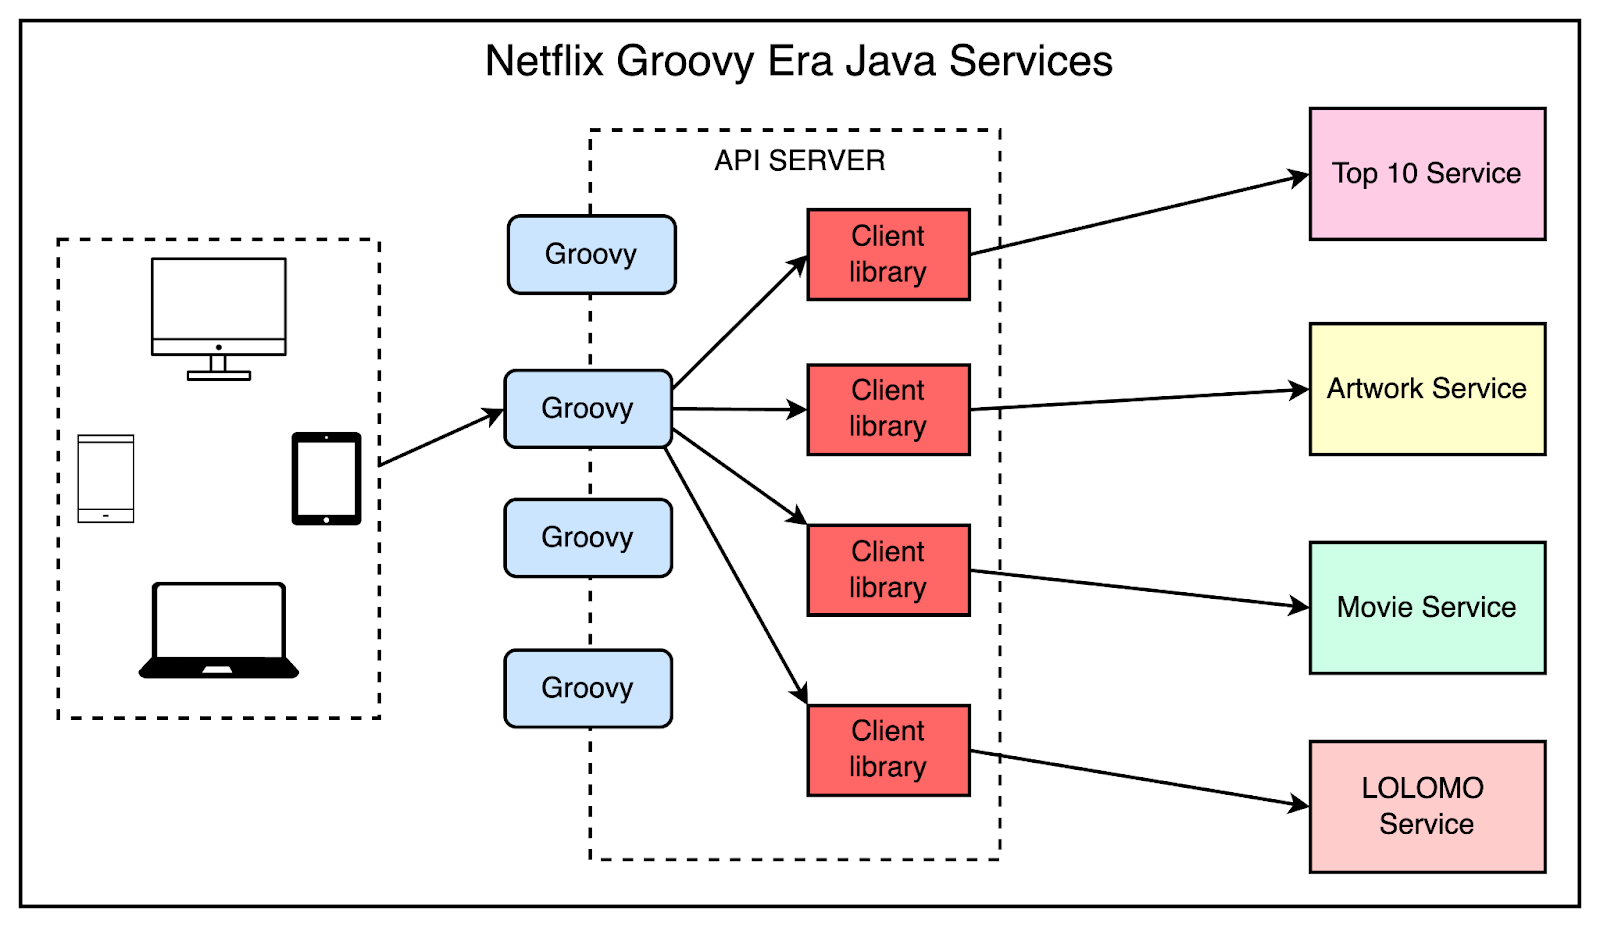 Netflix Groovy Era Java Services